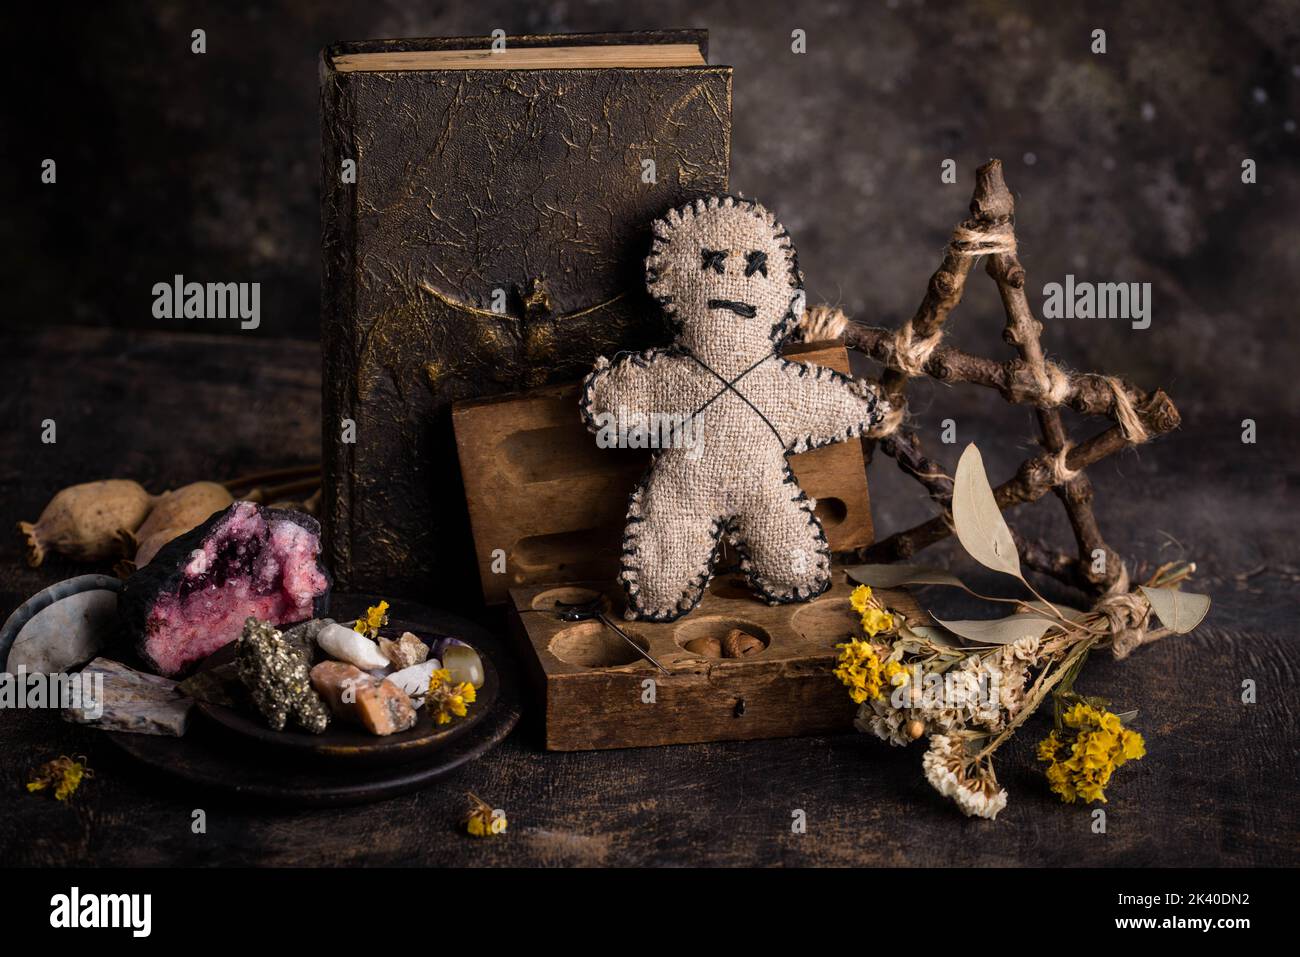 Bambola Voodoo. Rituale esoterico di magia nera. Foto Stock